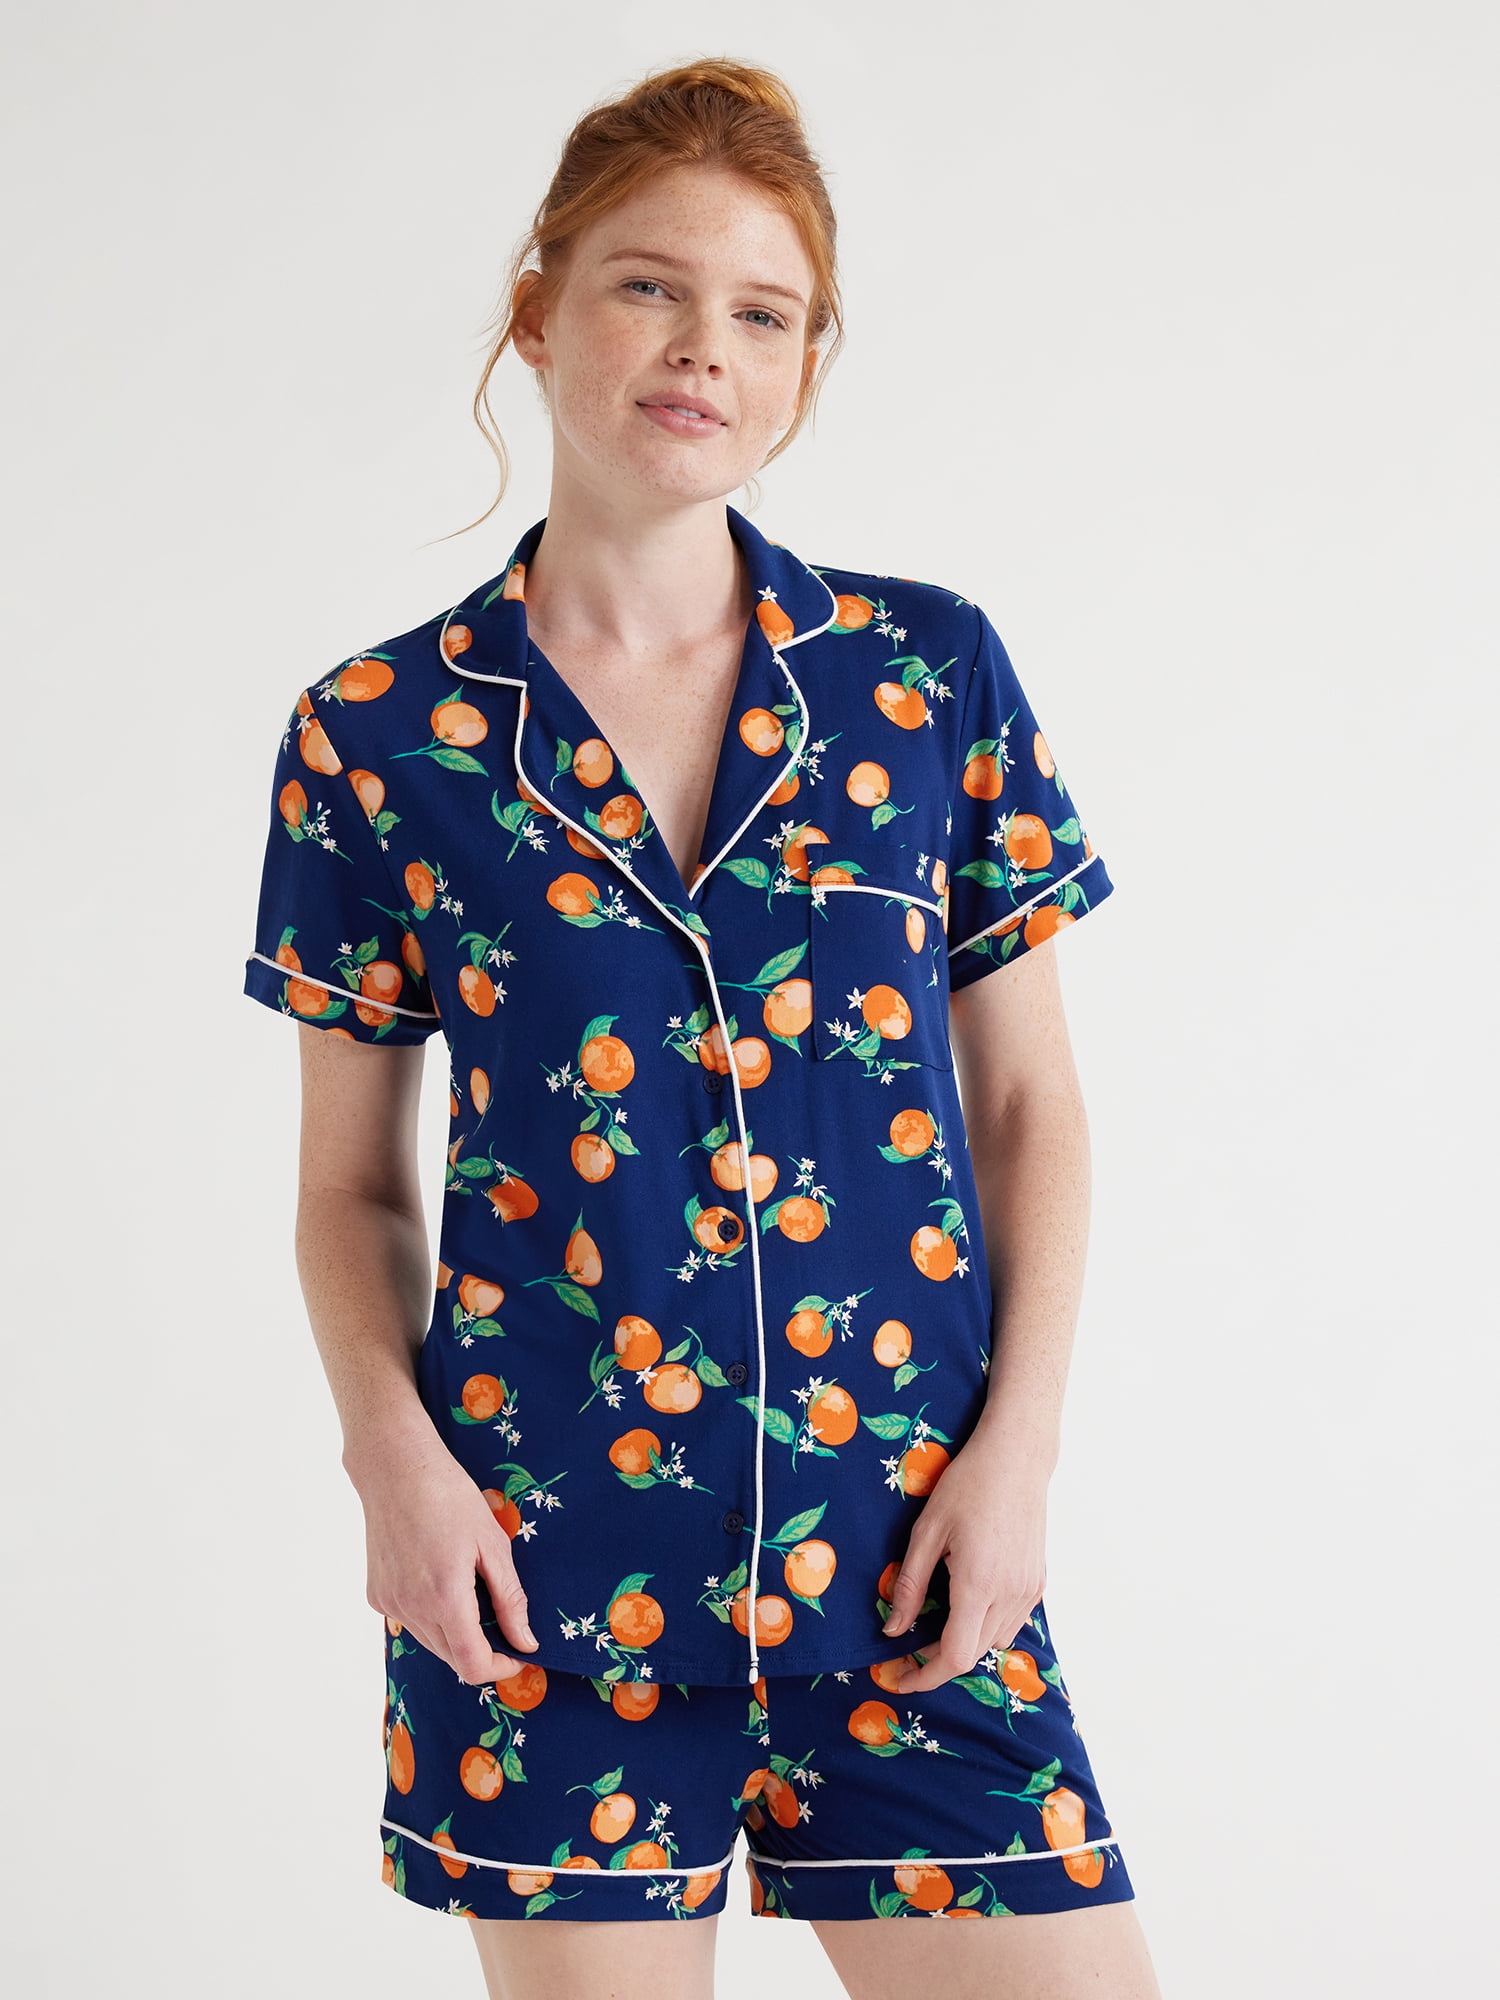 Joyspun Women’s Cotton Blend Notch Collar Top and Pants Pajama Set,  2-Piece, Sizes S to 4X